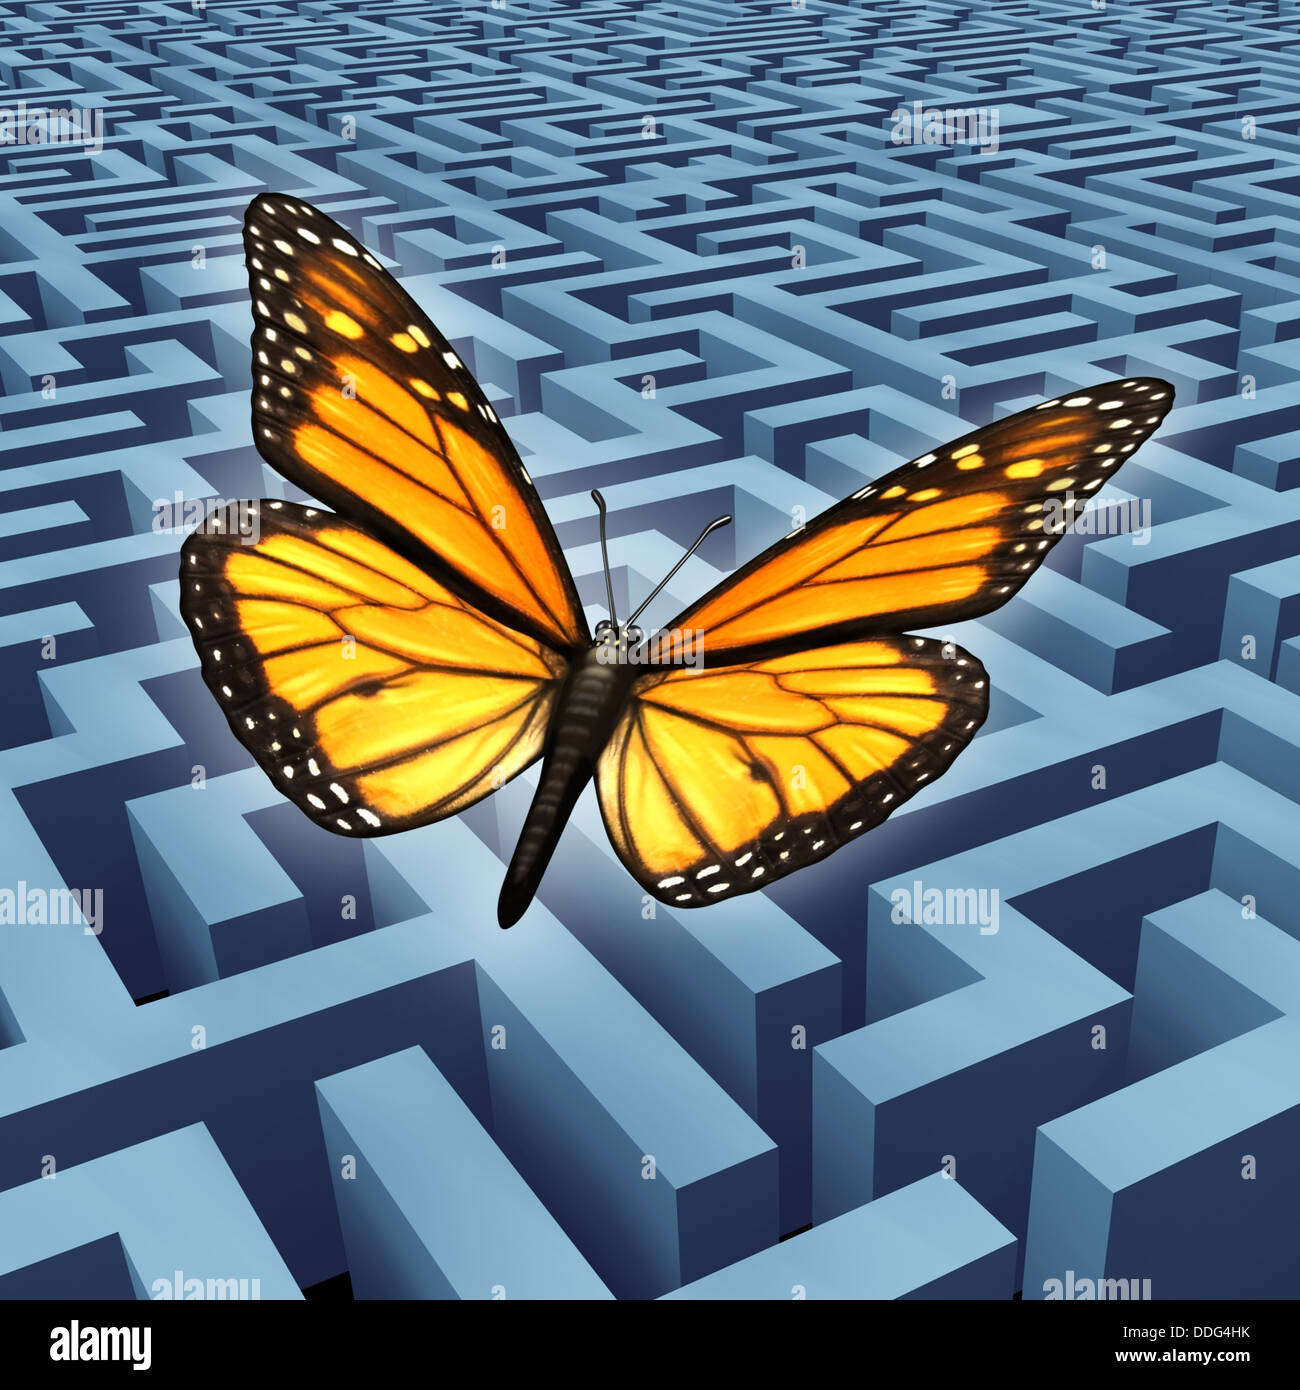 Credere in te stesso concetto e metafora per il successo con una farfalla monarca in un viaggio sorvolando un complicato labirinto o labirinto a salire al di sopra di avversità e ostacoli come stile di vita umana e business idea. Foto Stock